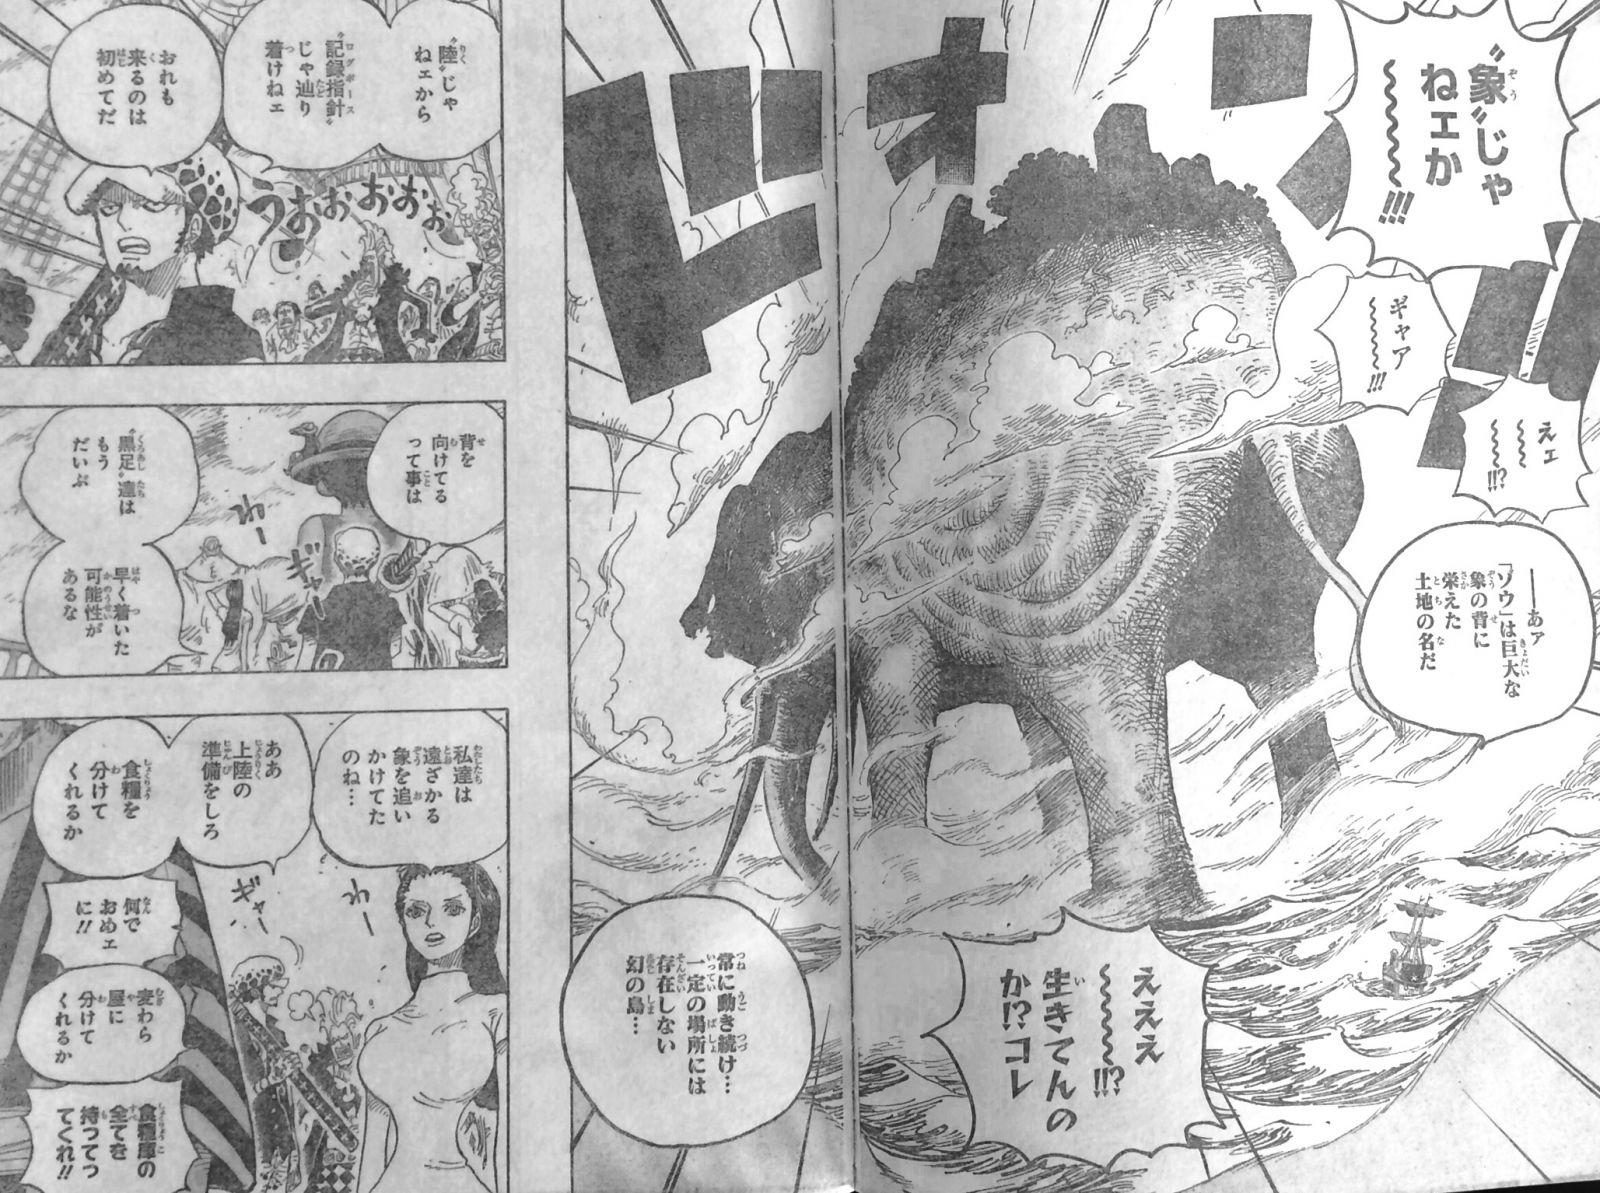 第802話 ゾウ 七武海エドワード ウィーブル登場 ゾウは象の背に 1000年栄えるミンク族 One Piece ワンピース 道場 アニメ 漫画 まにあ道 趣味と遊びを極めるサイト